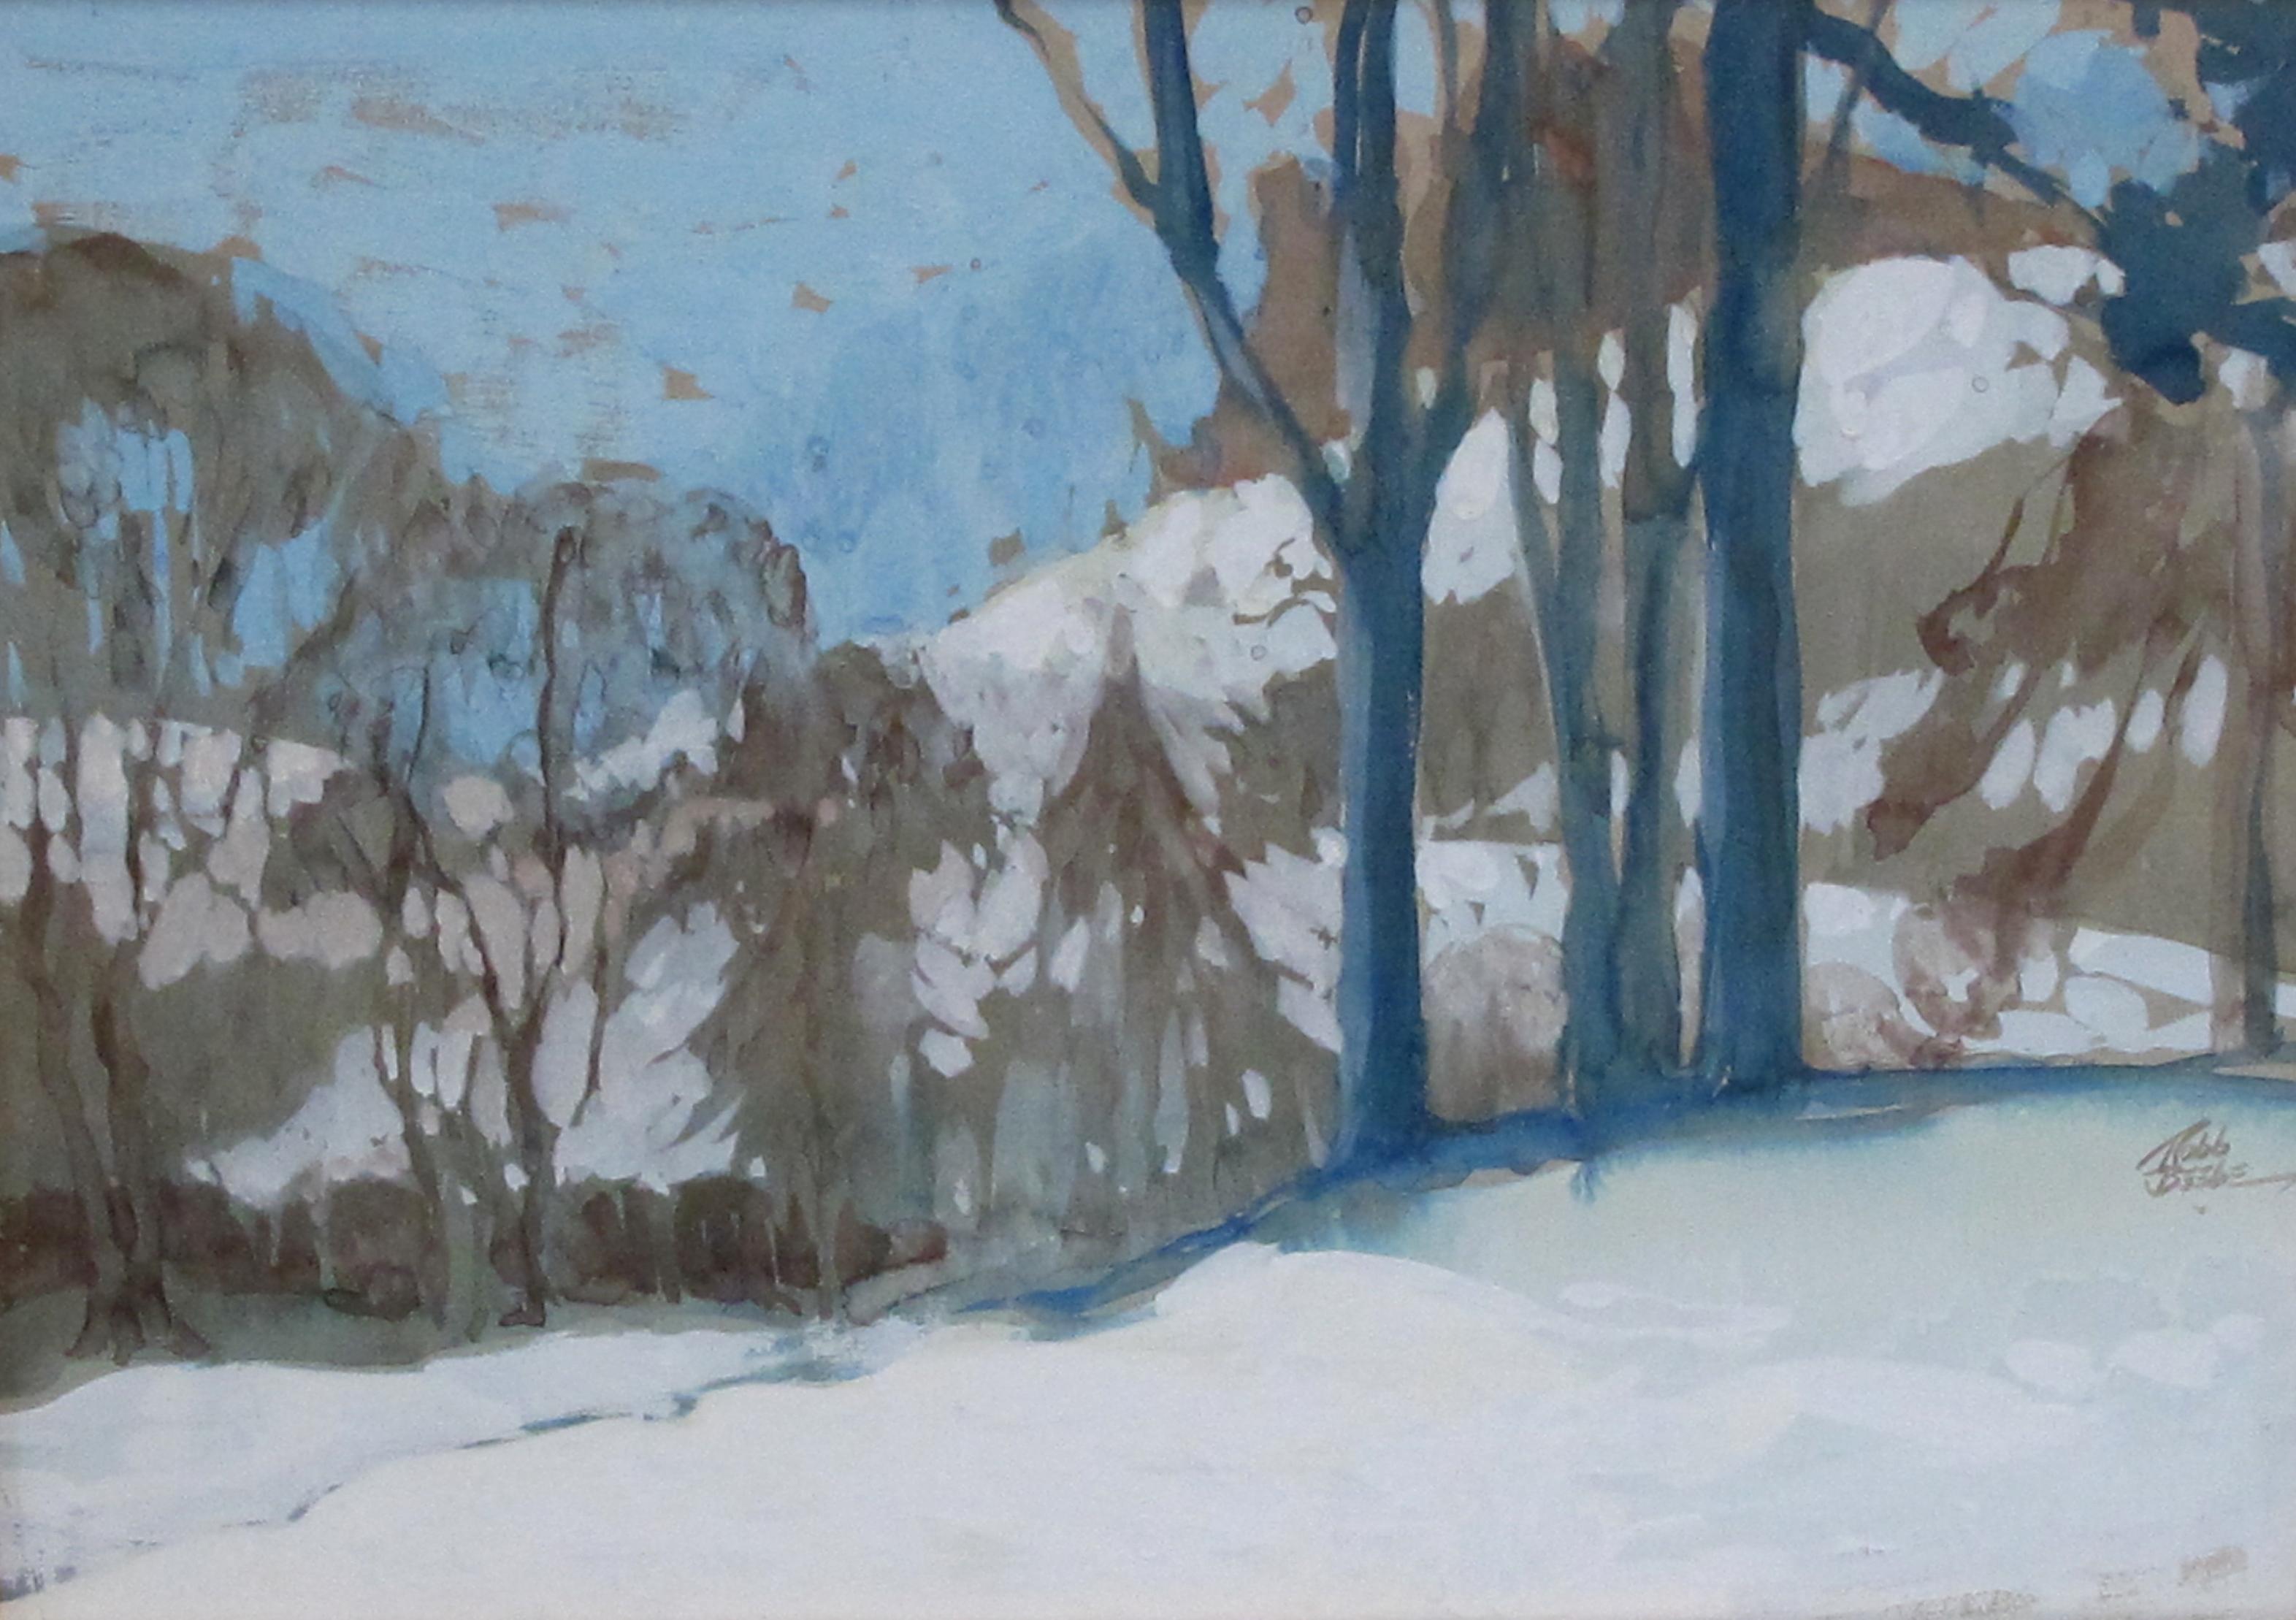 Gouache sur papier d'une scène atmosphérique de forêt hivernale signée Robb Beebe (1891-1966) ; cette peinture sereine aux tons limités et aux couleurs harmonieuses dépeint une scène hivernale impressionniste et vallonnée. Robb Beebe a commencé sa